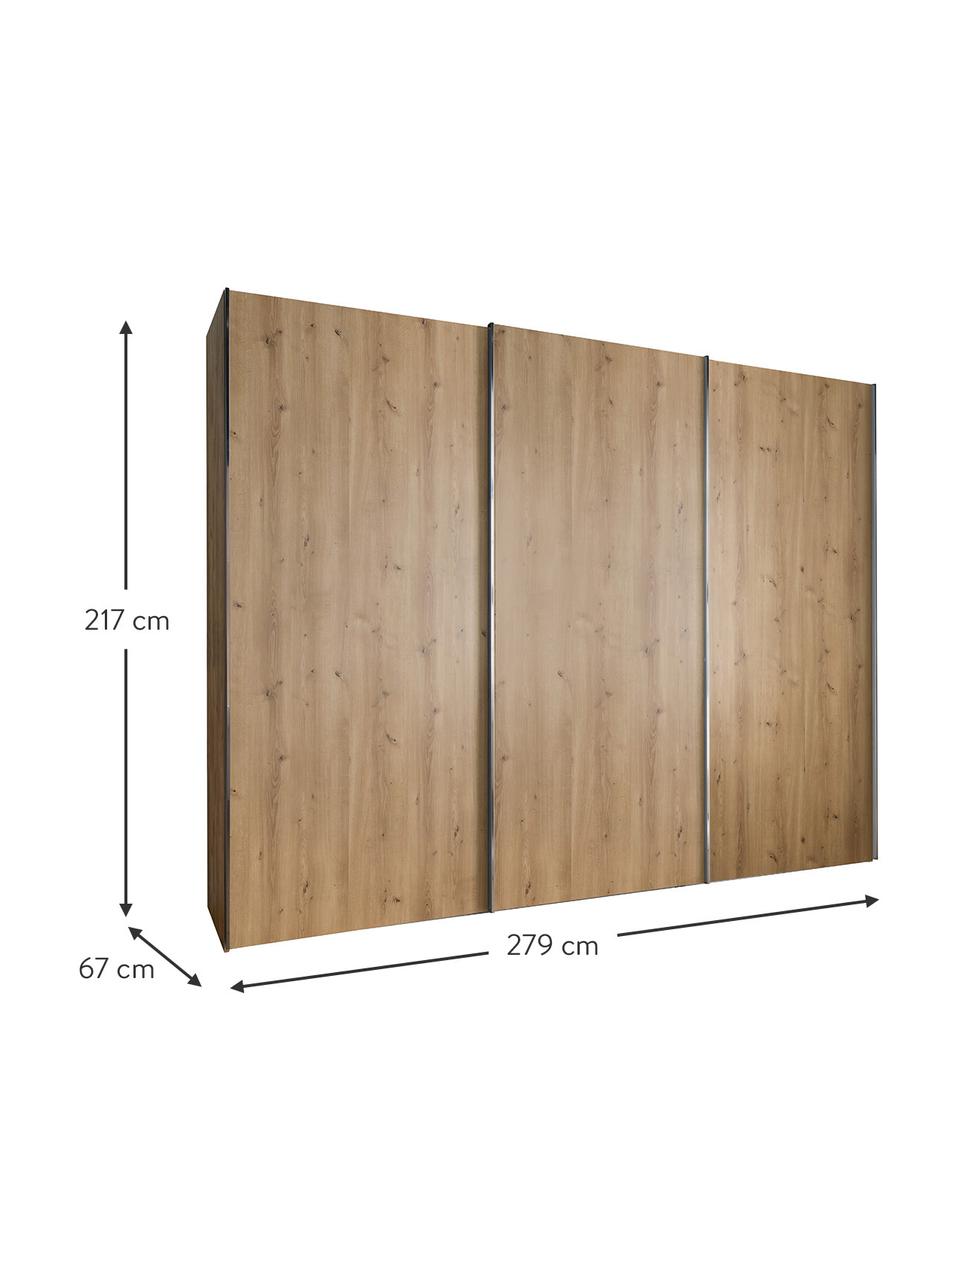 Šatní skříň s posuvnými dveřmi Monaco, 3dvéřová, Dřevo, Š 279 cm, V 217 cm